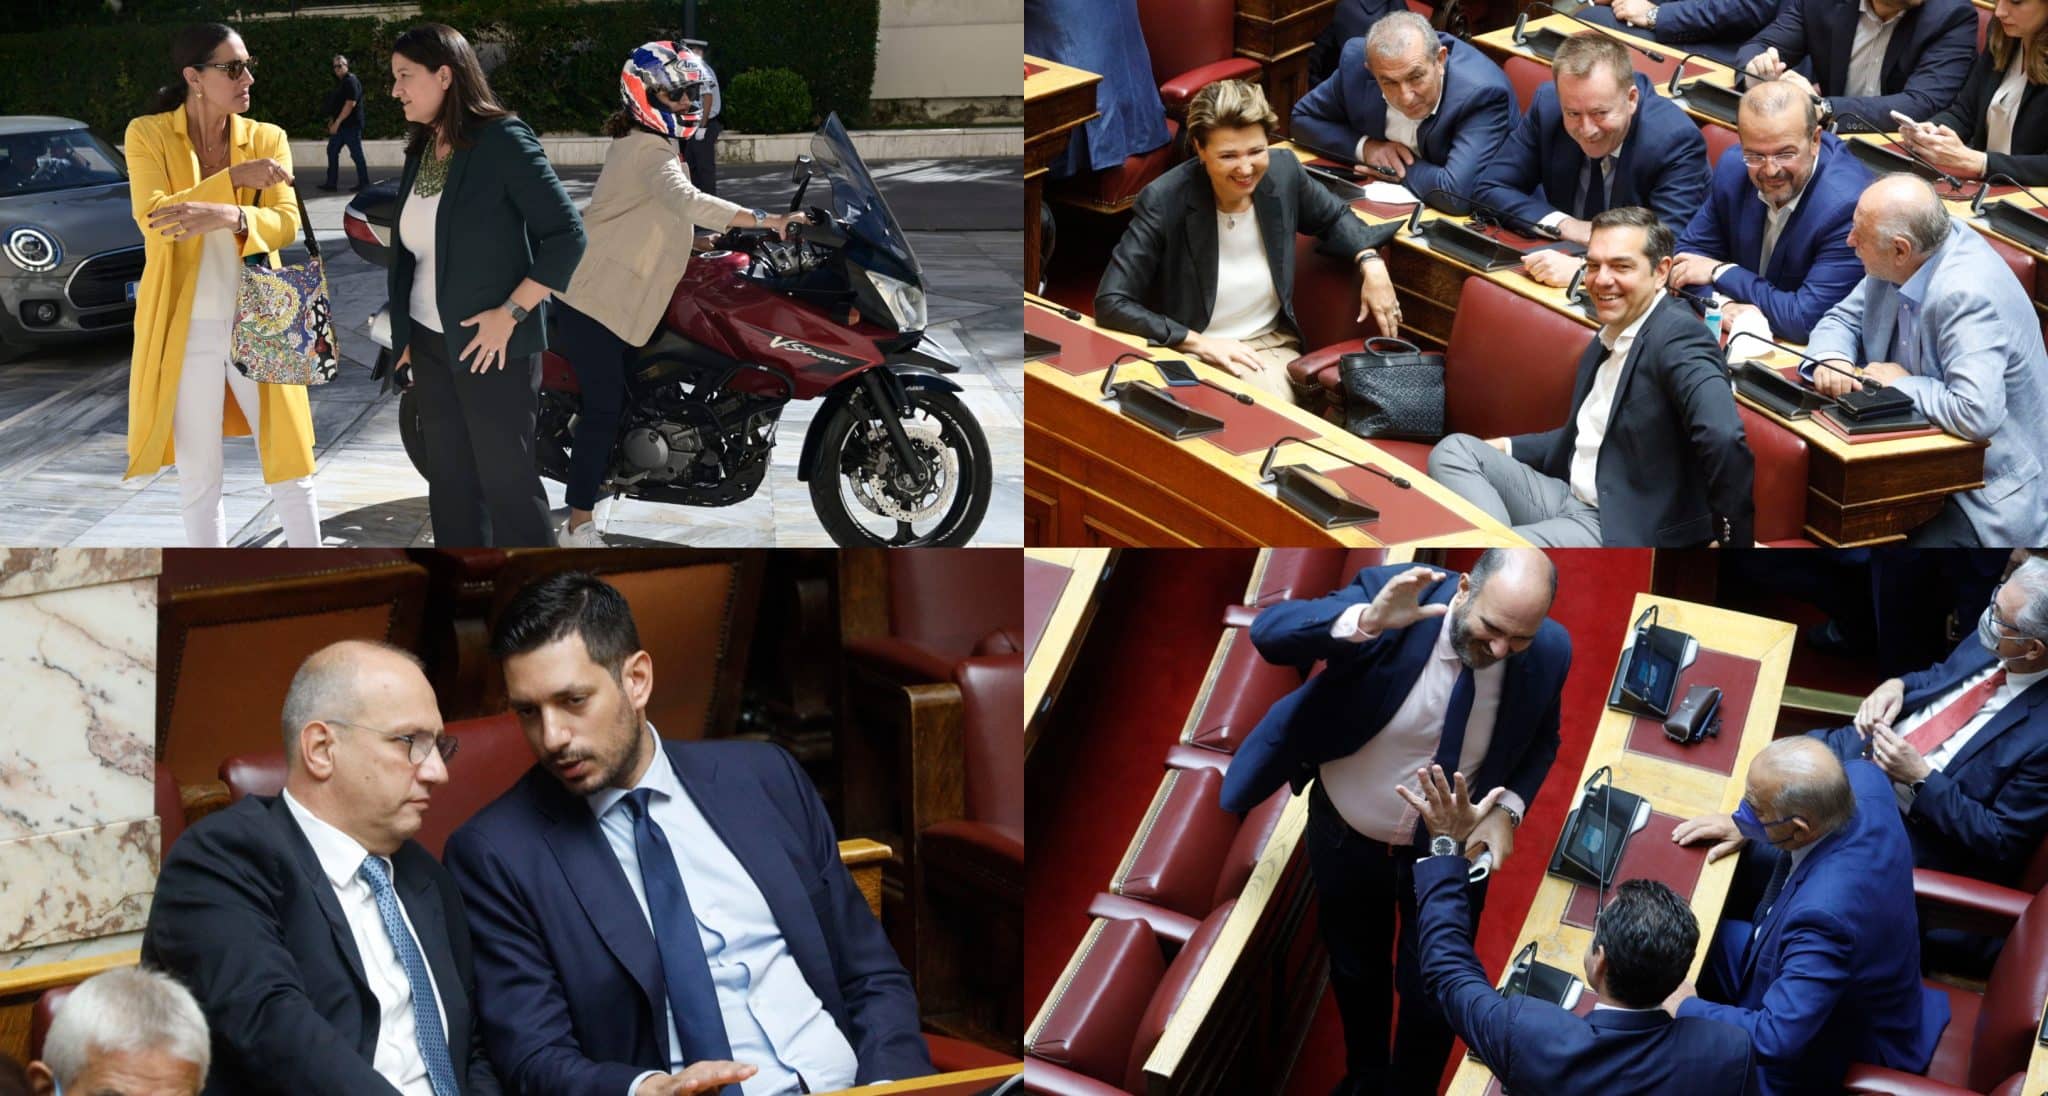 agiasmos vouli pigadakia scaled - Τα «πηγαδάκια» στη Βουλή κατά τον αγιασμό για την έναρξη των εργασιών (εικόνες)